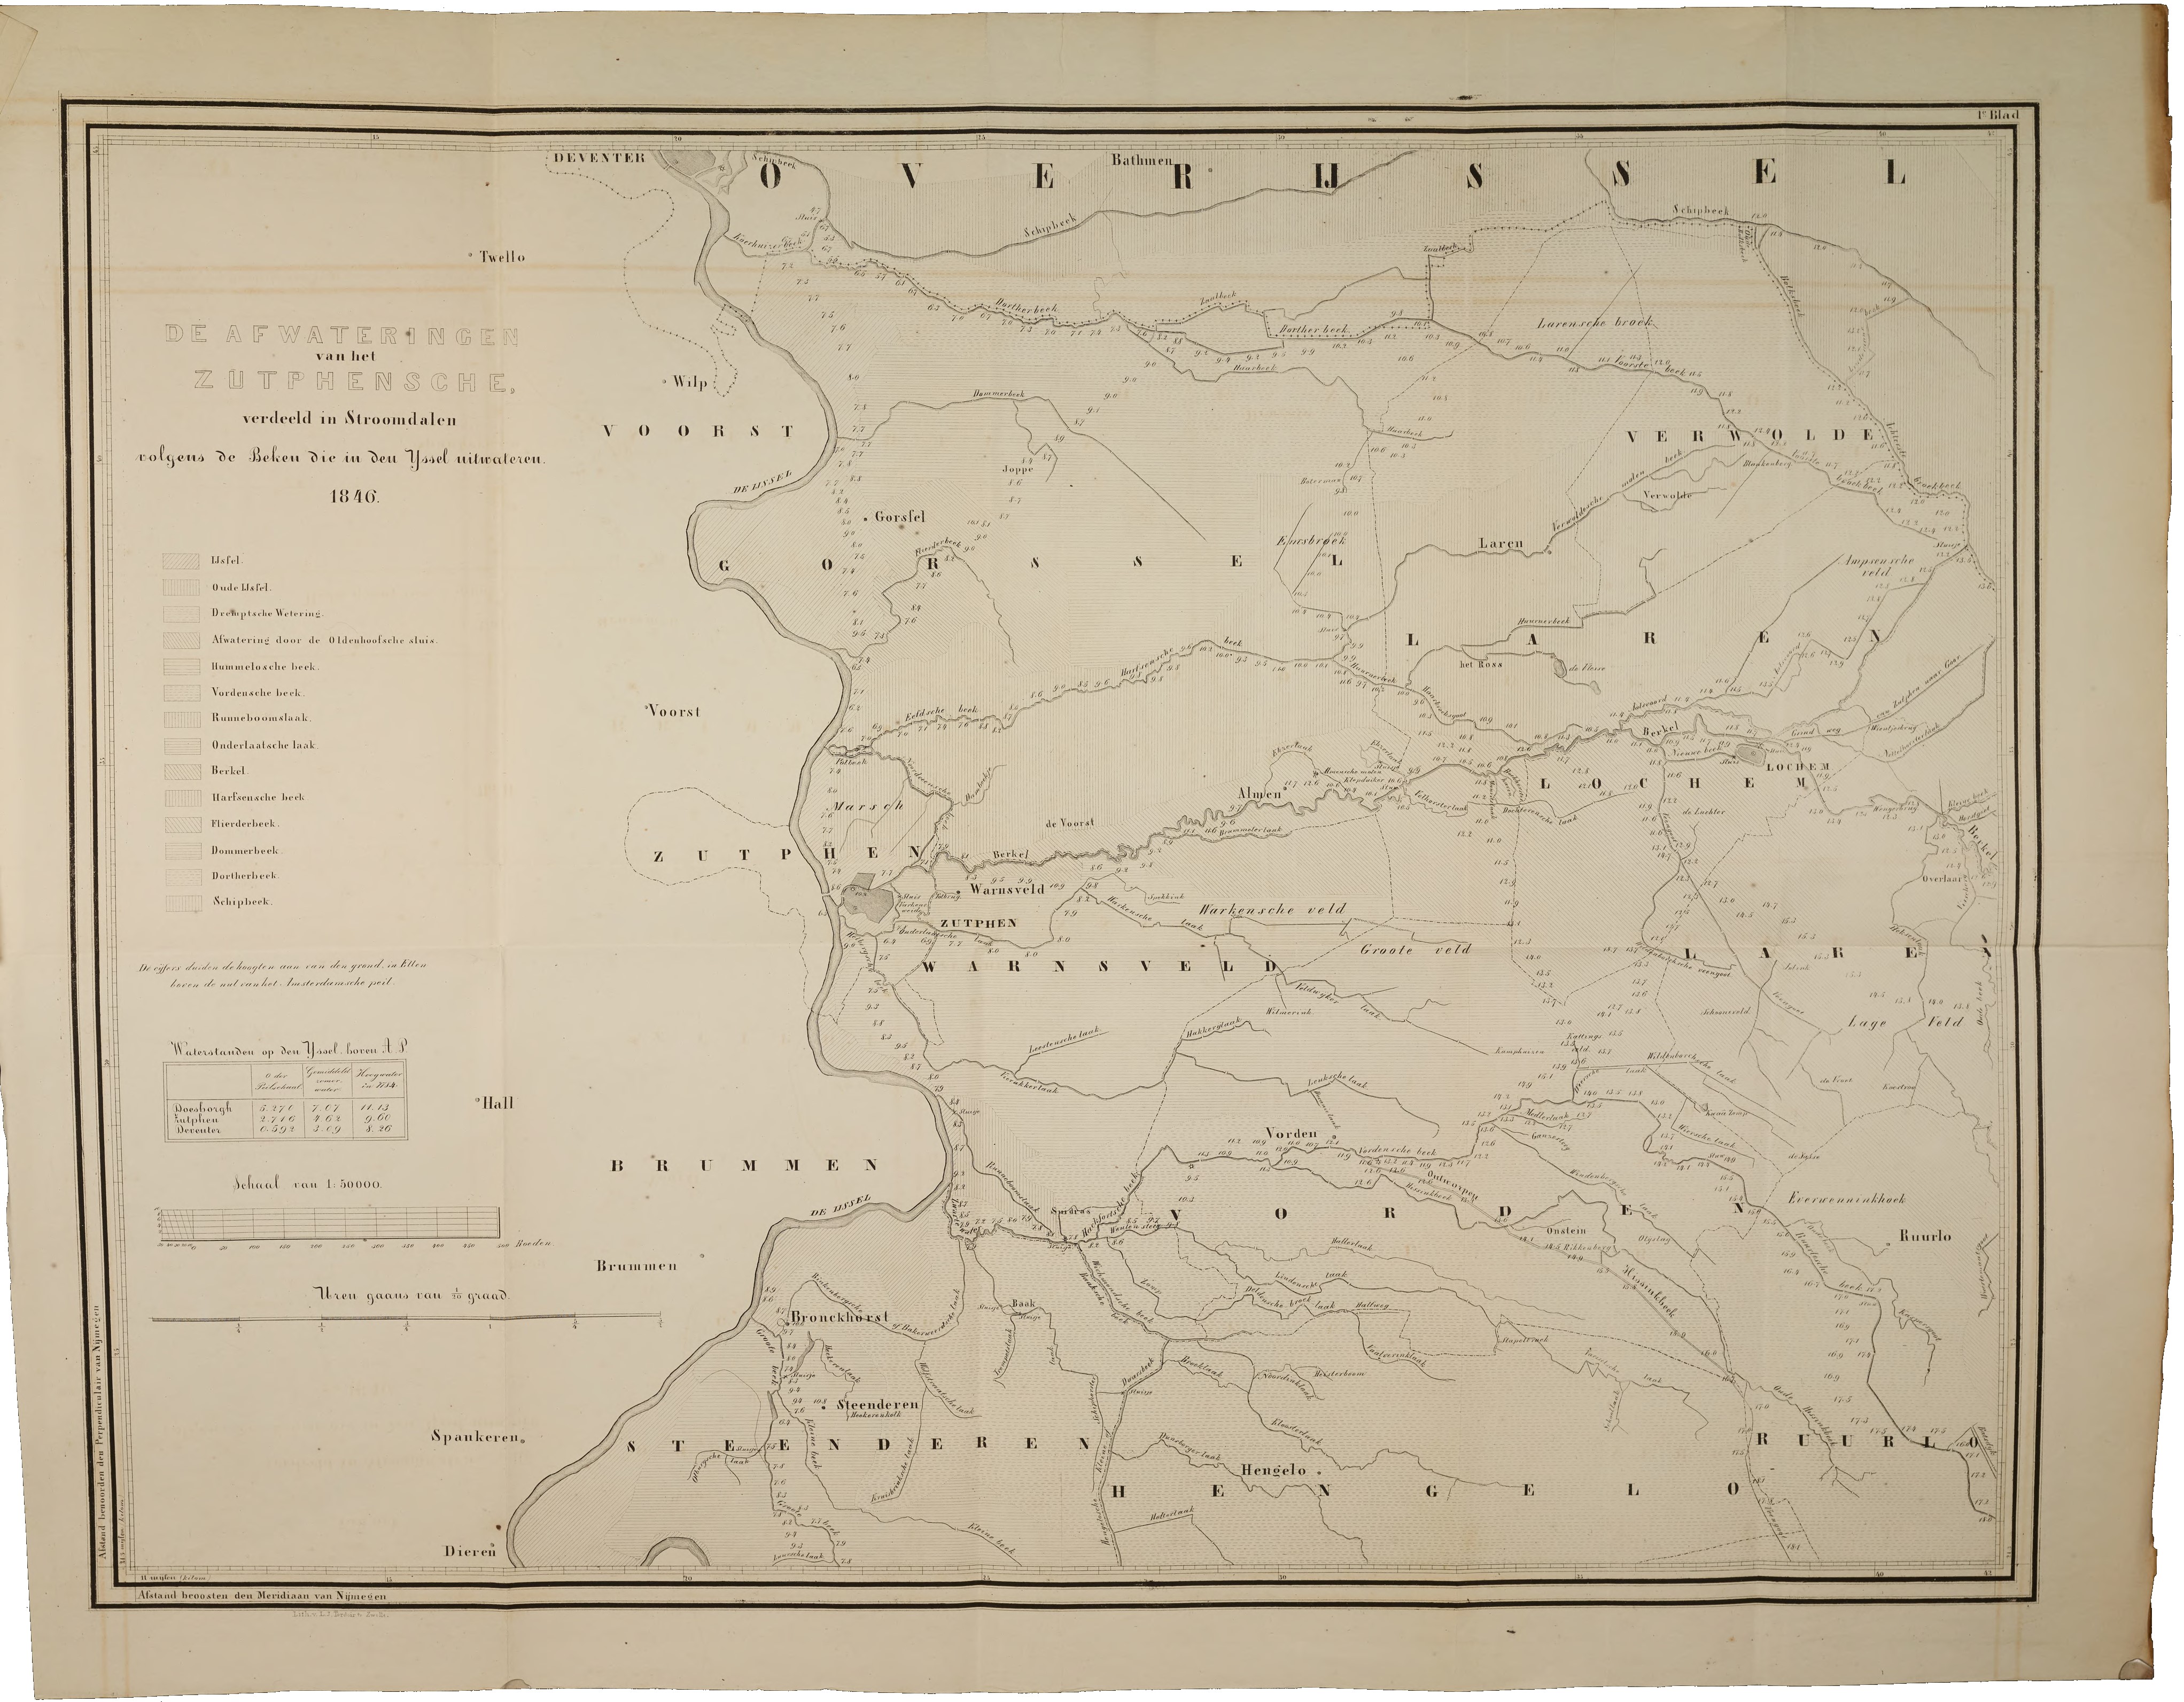 kaart De Afwateringen van het Zutphensche